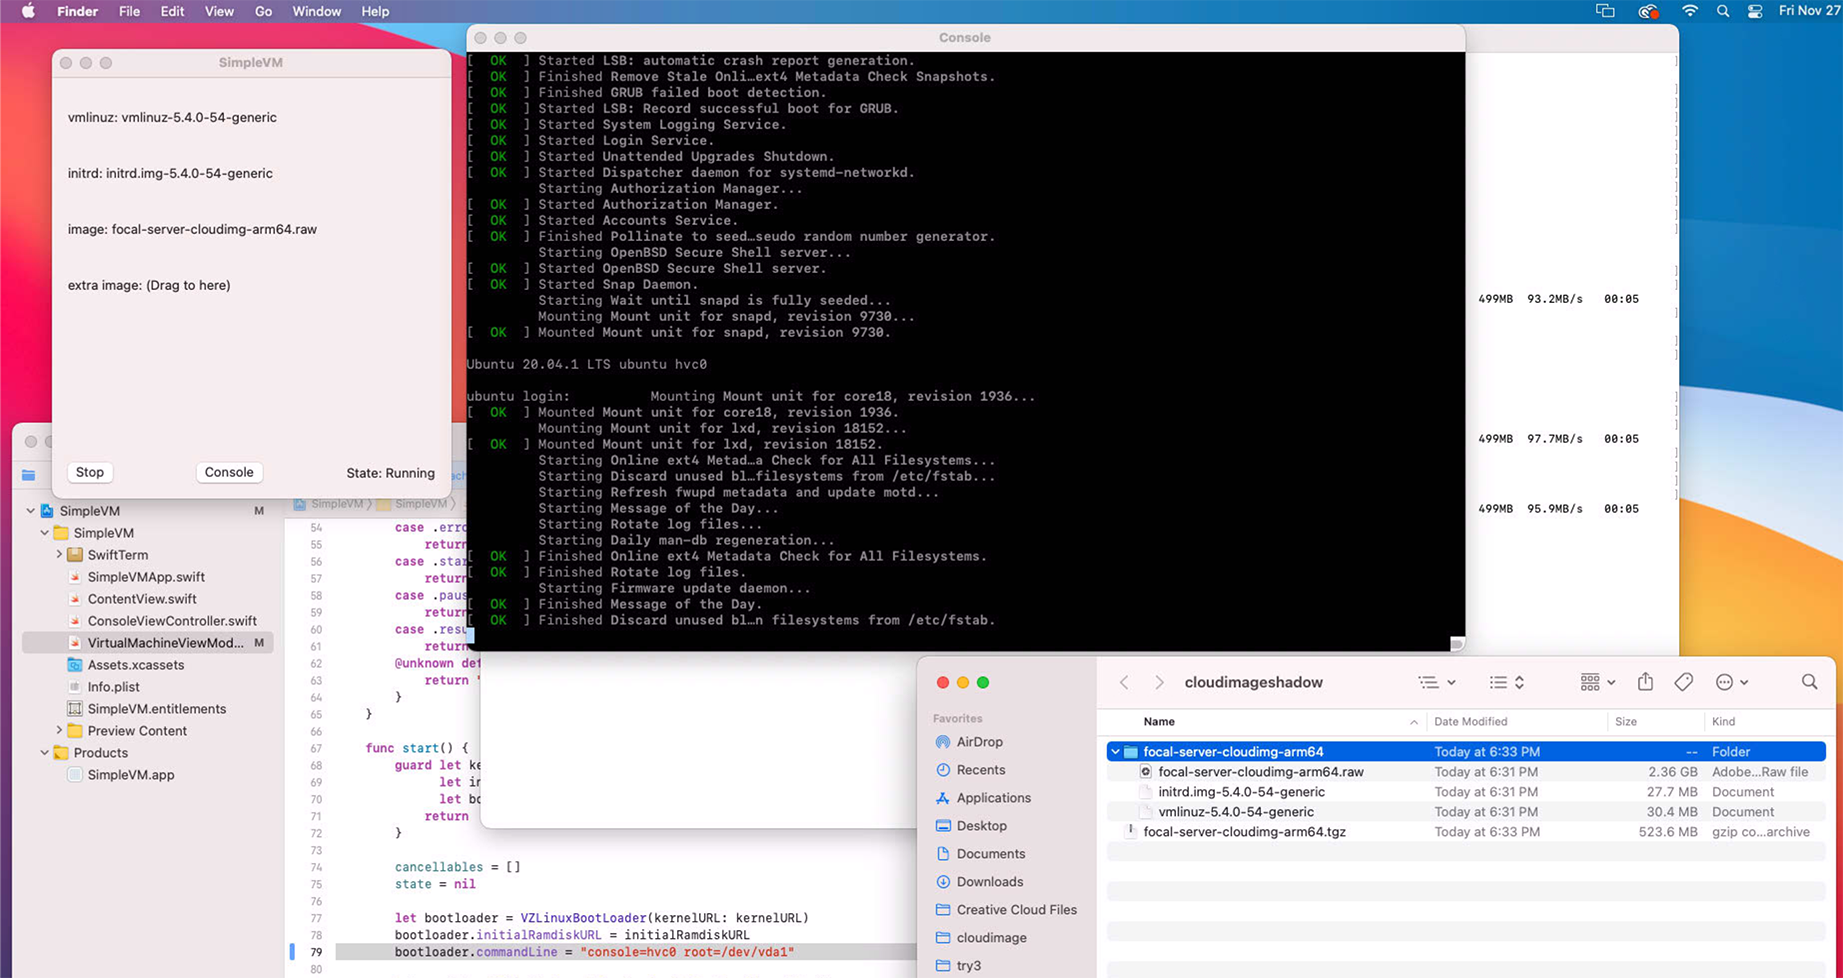 Screen cap of mac mini running ubuntu arm64